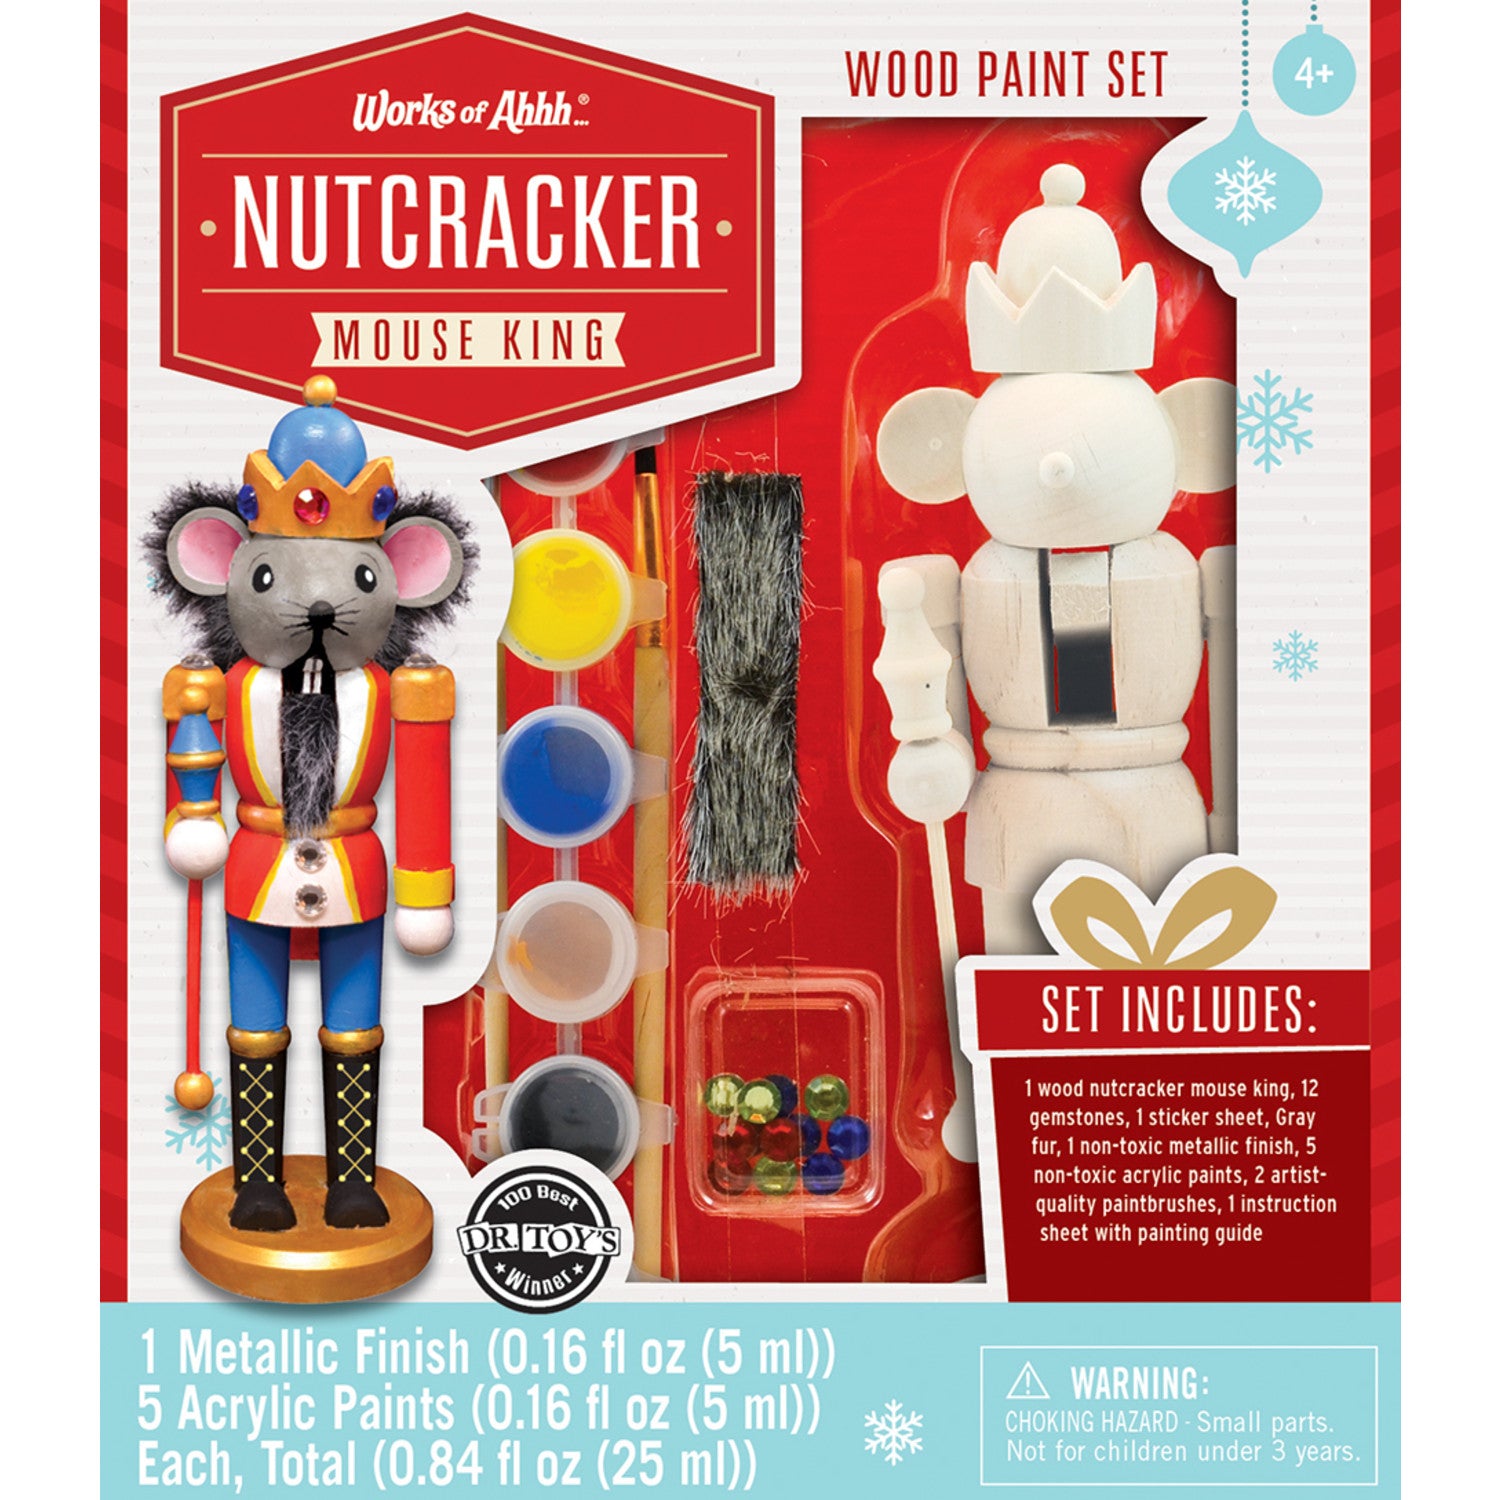 Nutcracker Mouse King Wood Paint Set